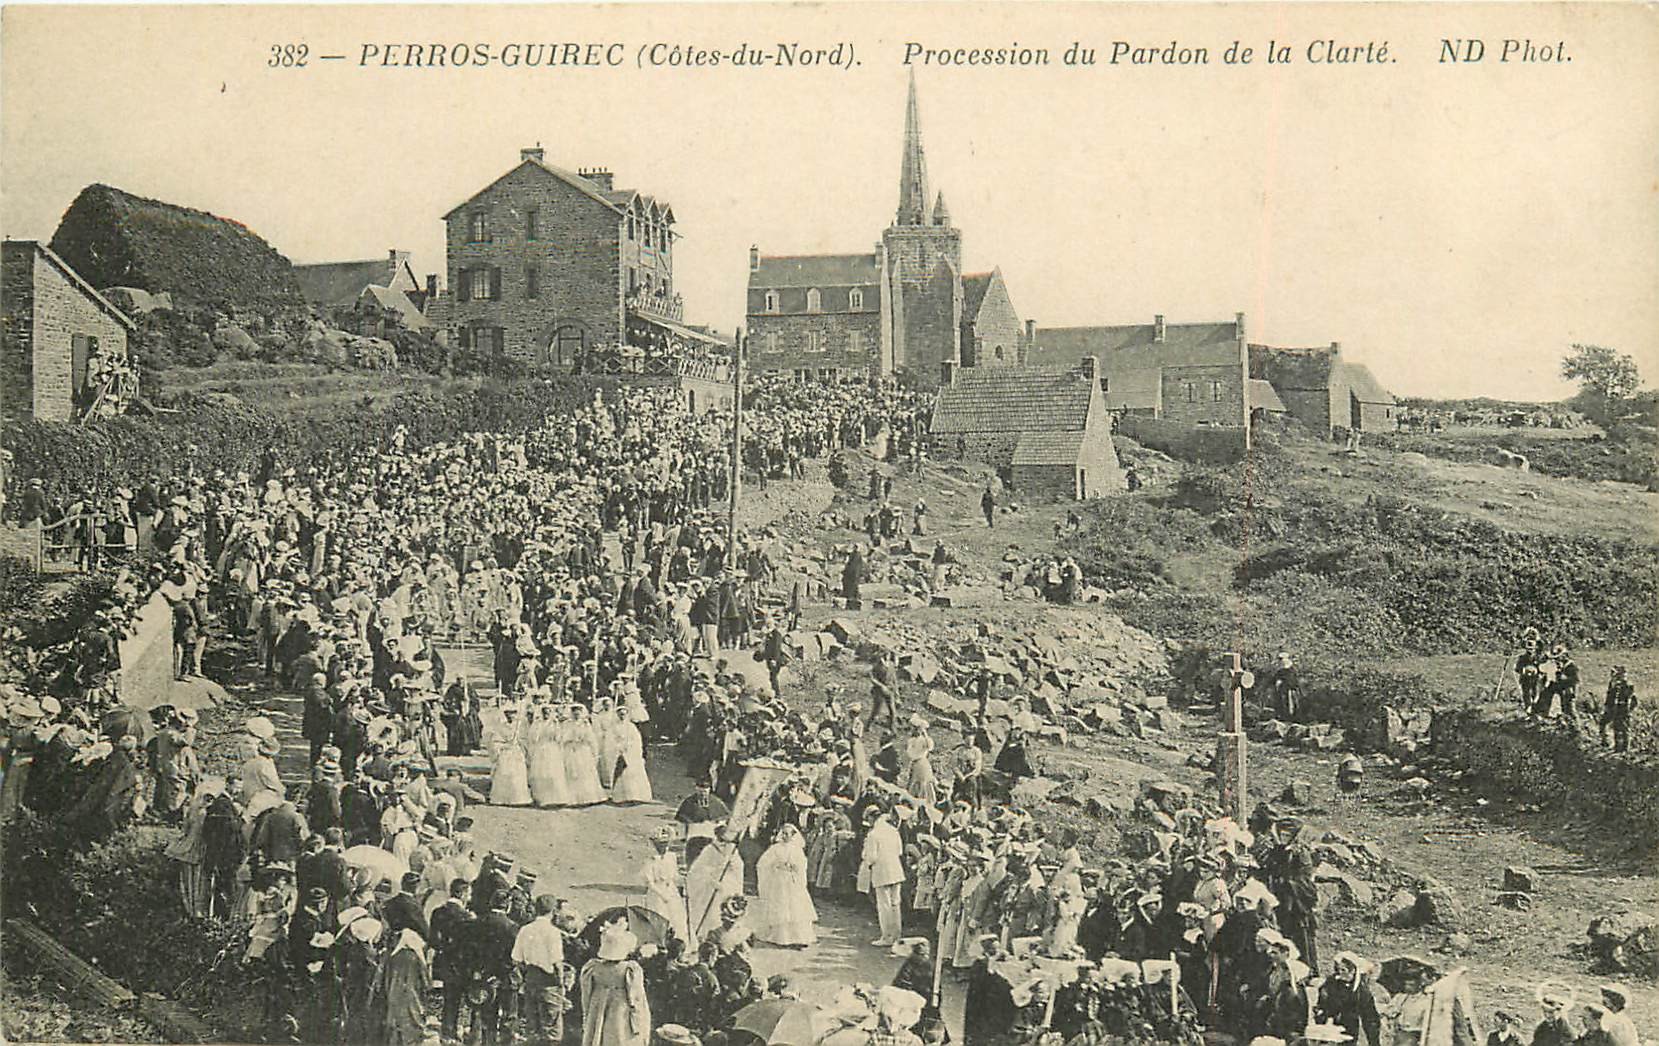 22 PERROS-GUIREC. Procession du Pardon de la Clarté